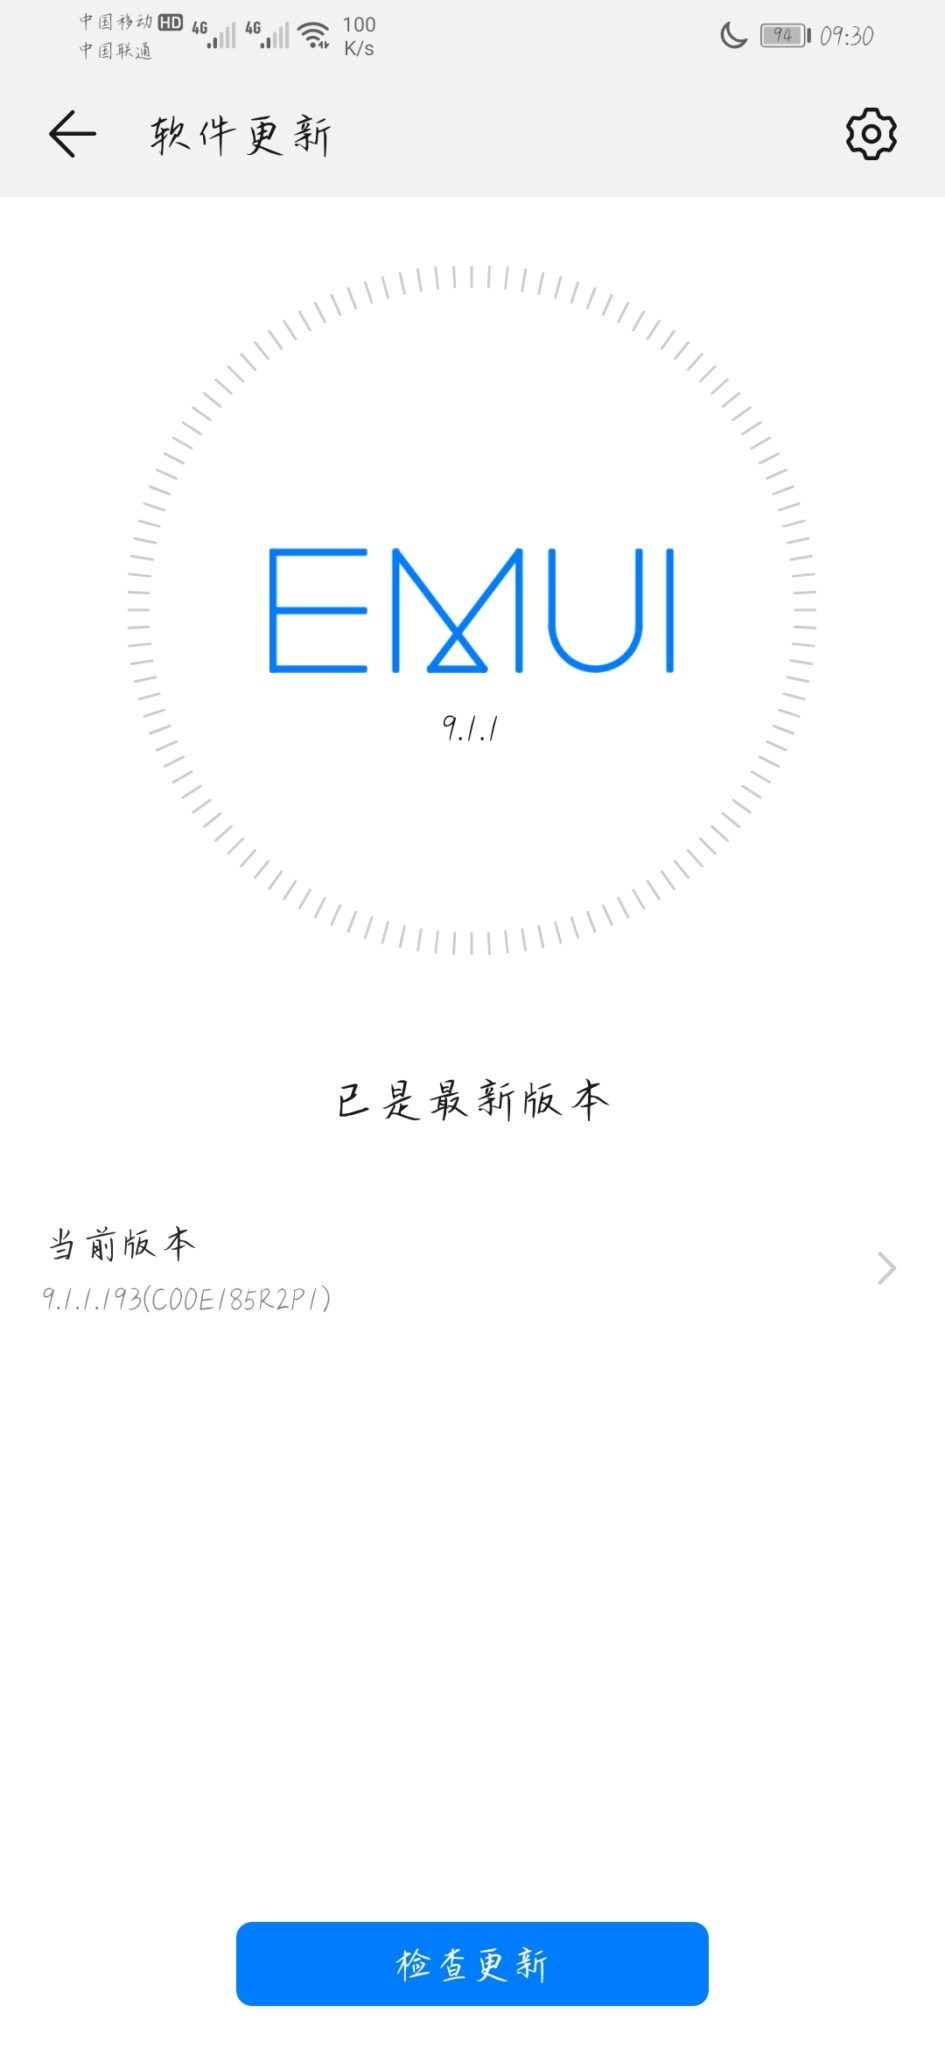 Huawei Nova 5 received EMUI 9.1.1.193 April 2020 security update